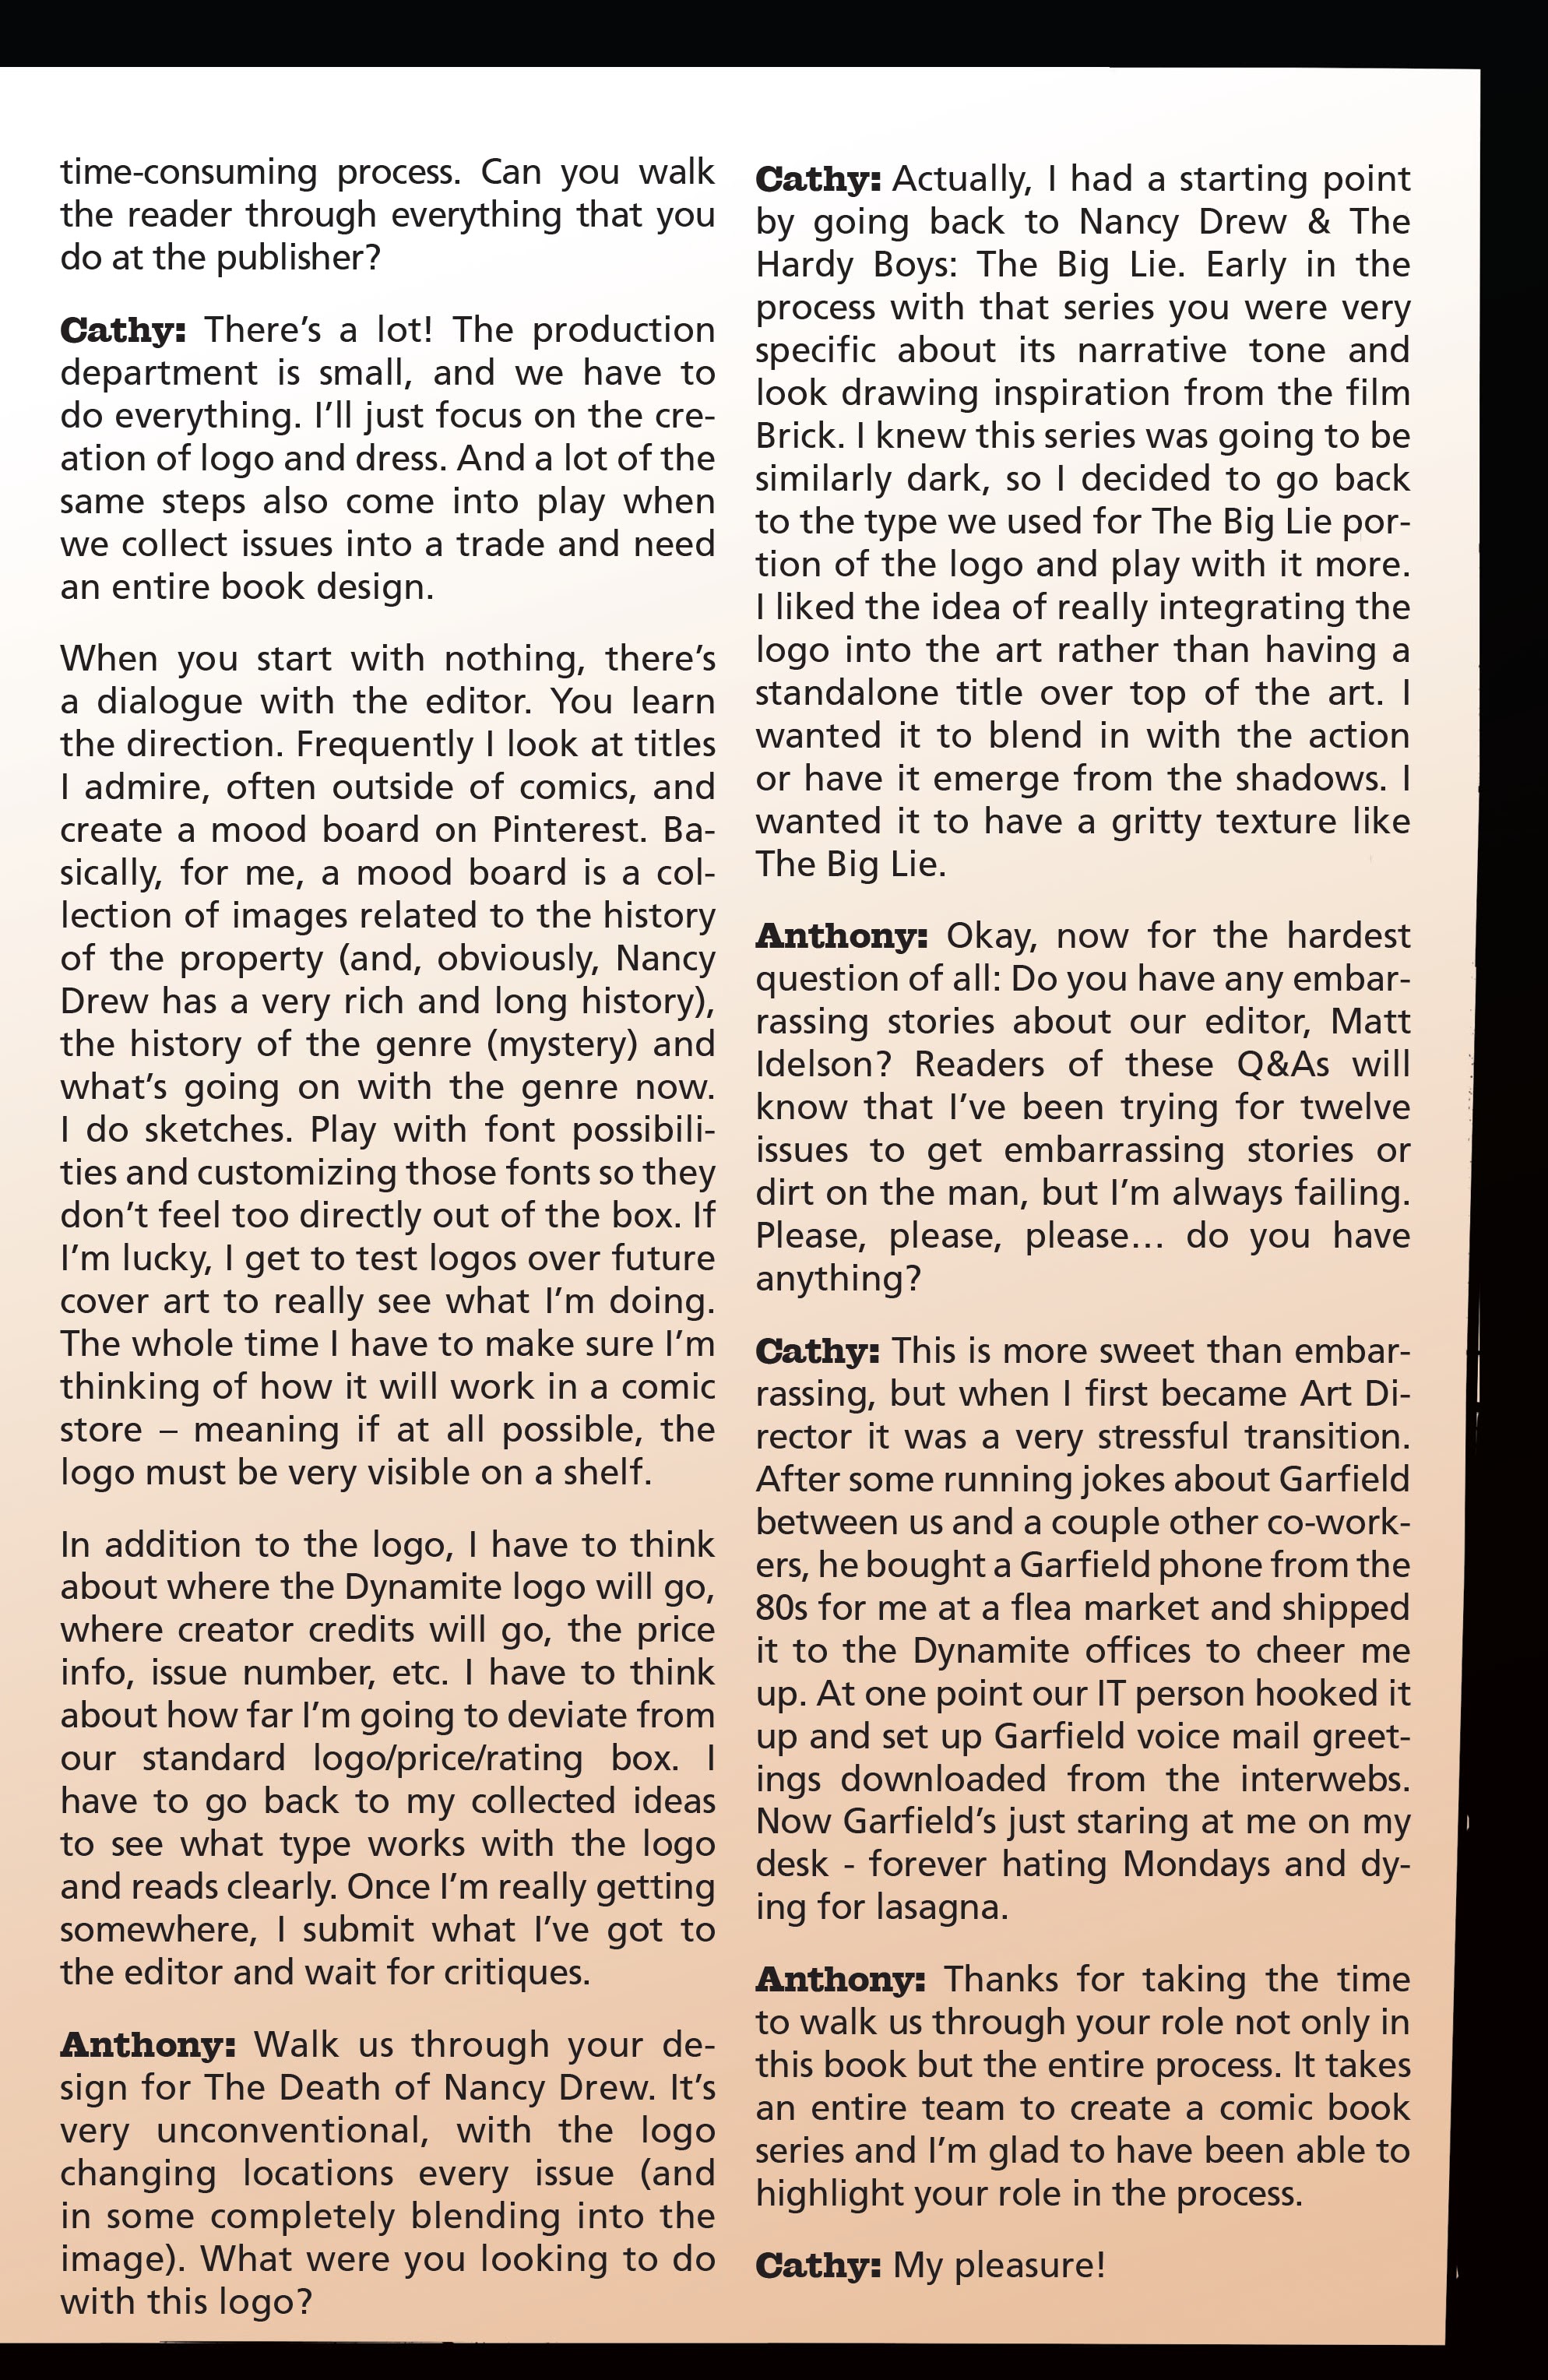 Read online Nancy Drew & The Hardy Boys: The Death of Nancy Drew comic -  Issue #6 - 27